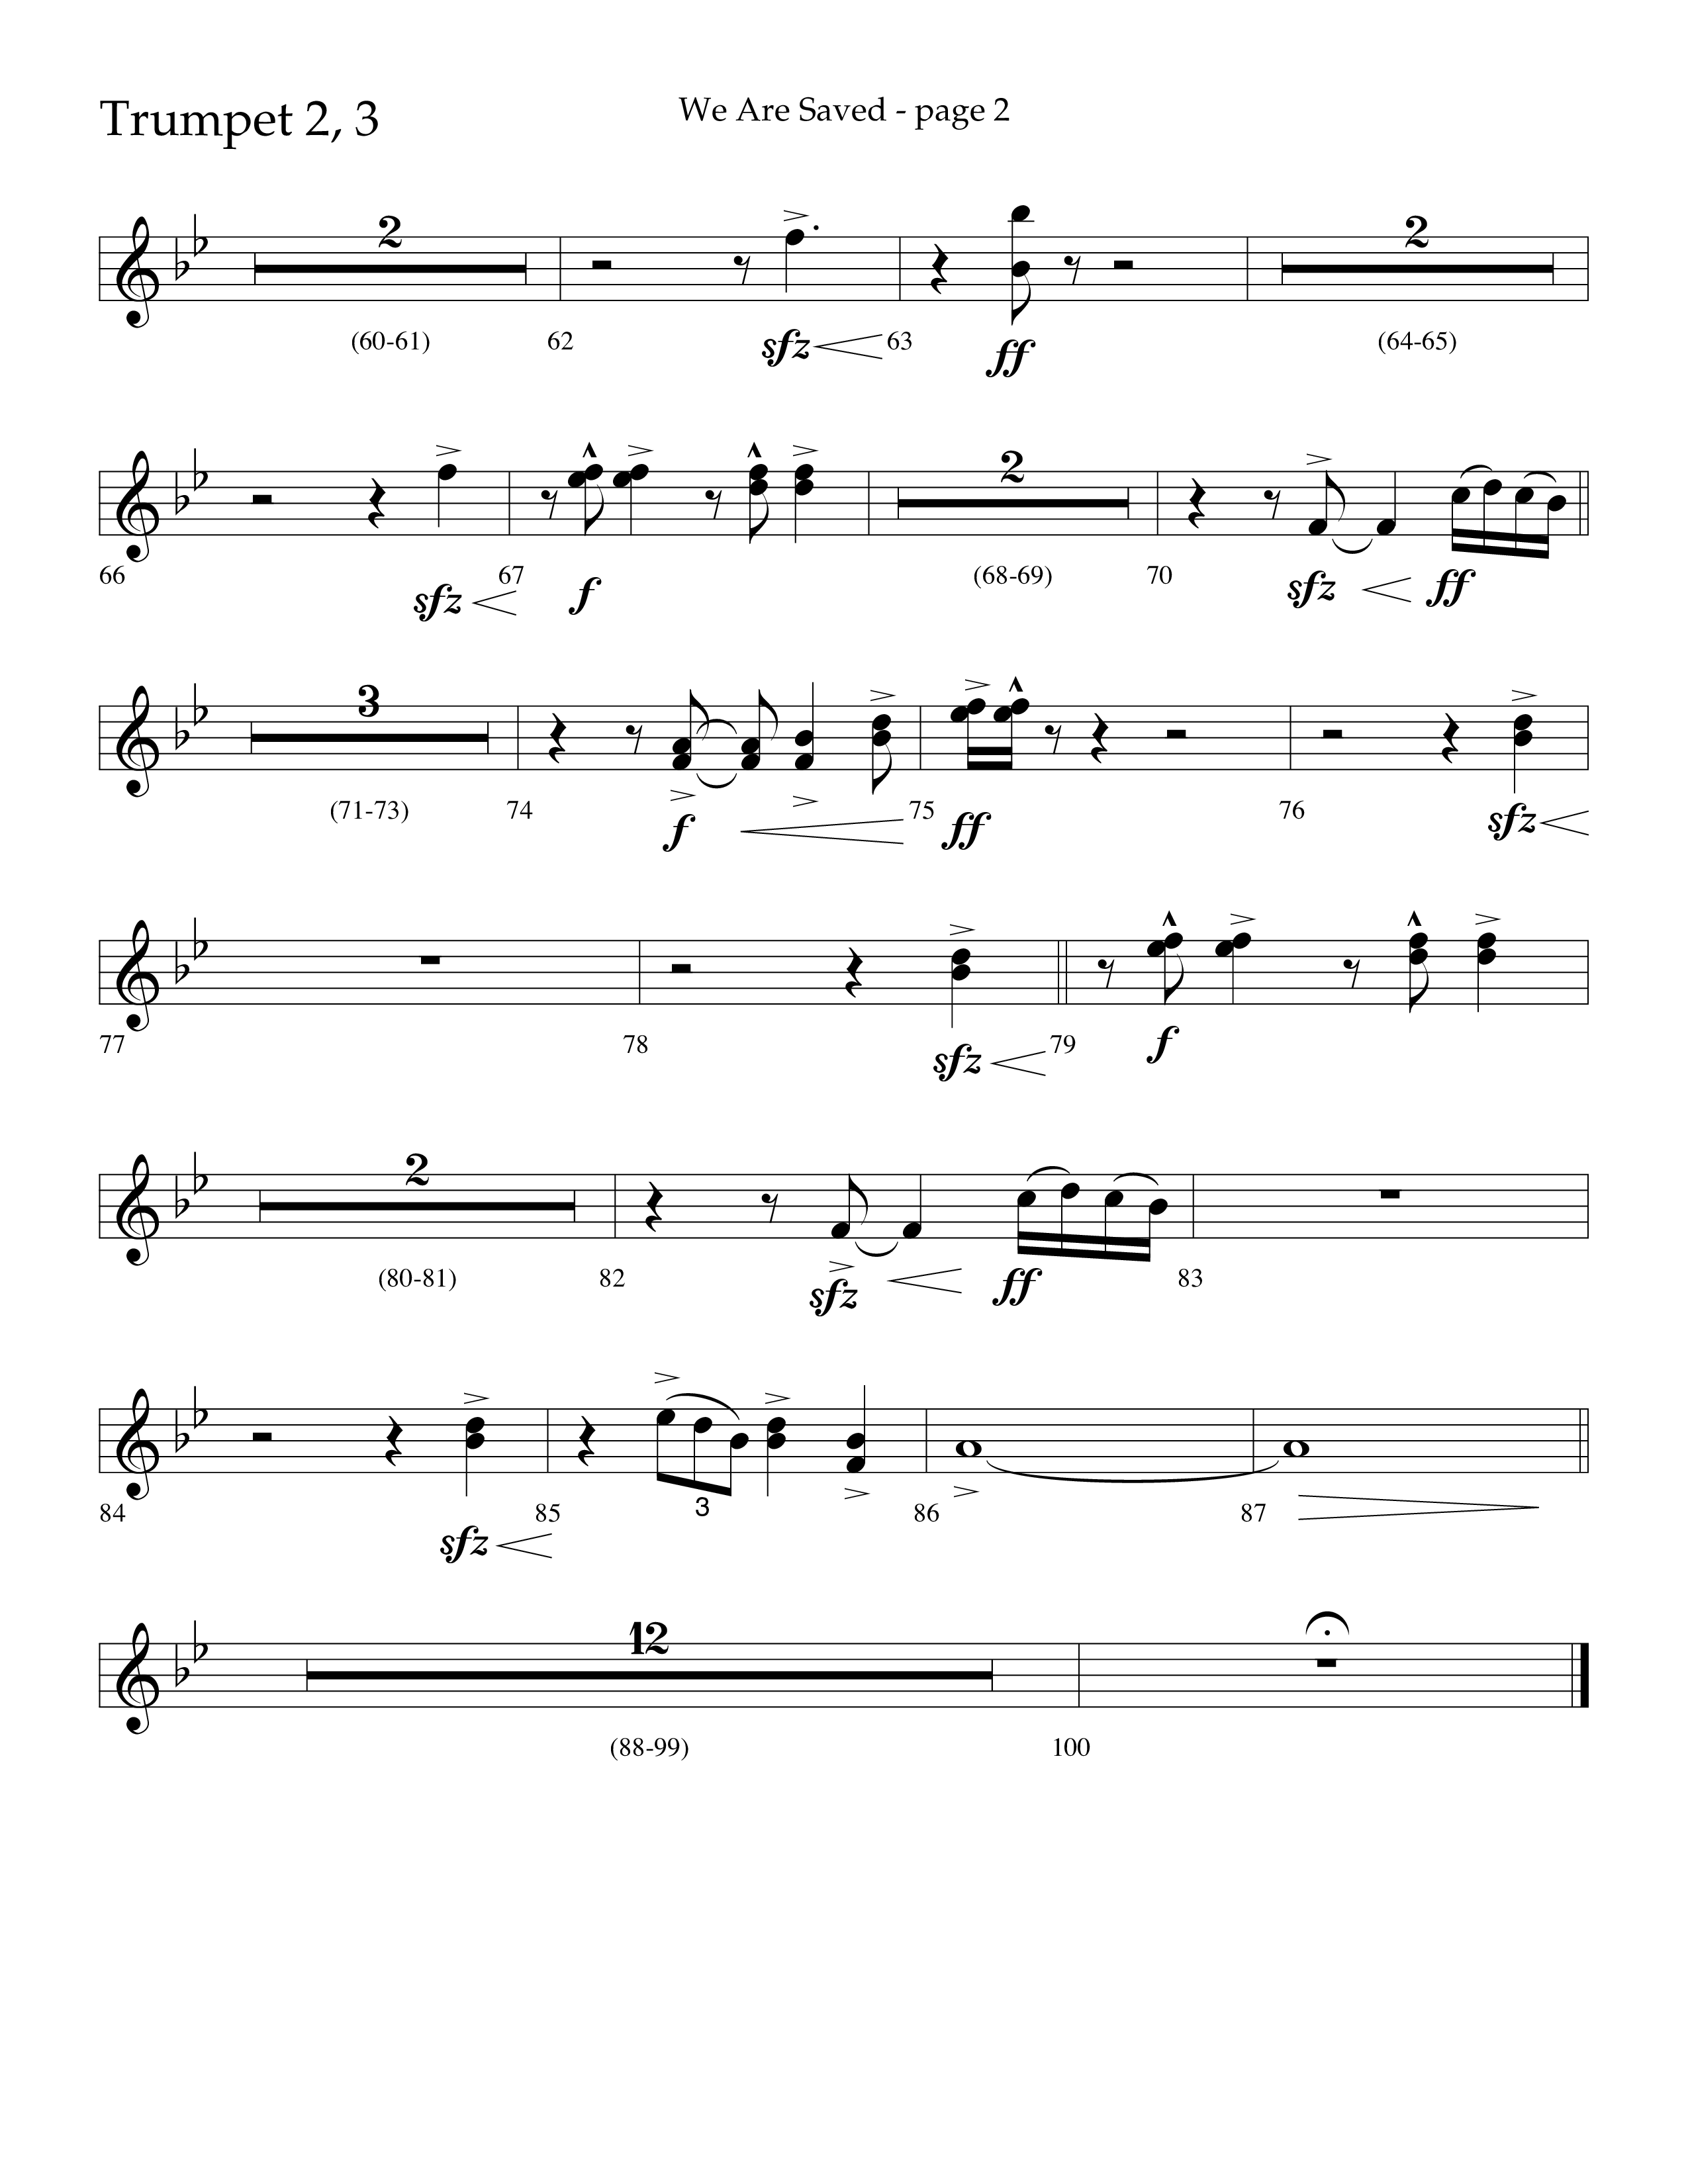 We Are Saved (Choral Anthem SATB) Trumpet 2/3 (Lifeway Choral / Arr. Cliff Duren)